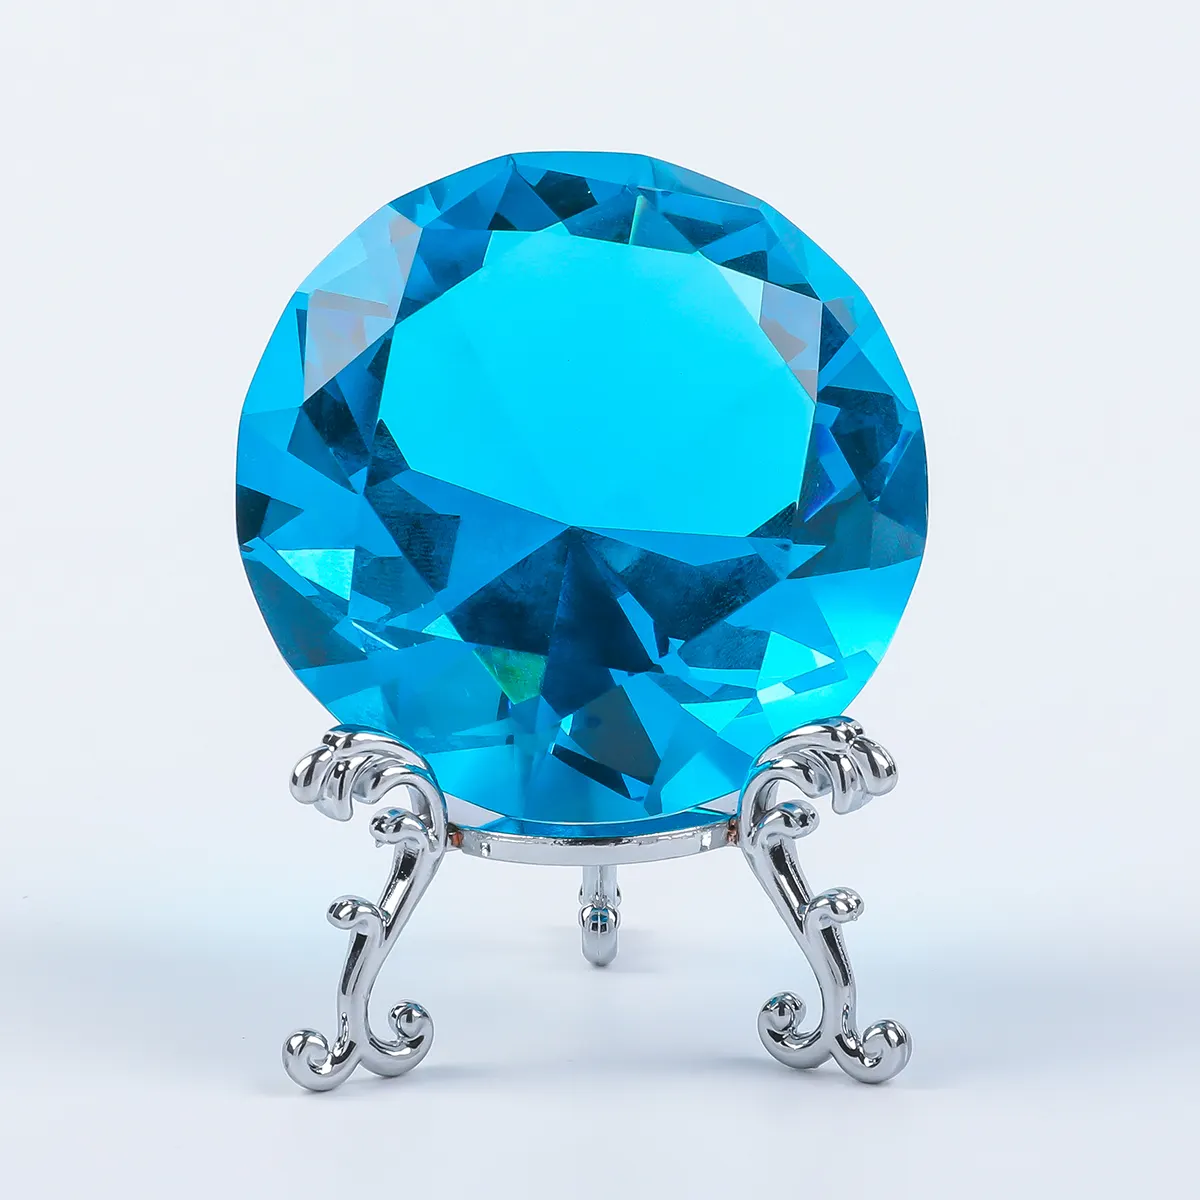 Großhandel große blaue Kristallglas-Diamant-Form Dekoration 60mm Juwel Papiergewicht mit Steh-Jeuwel Hochzeits-Dekorationen